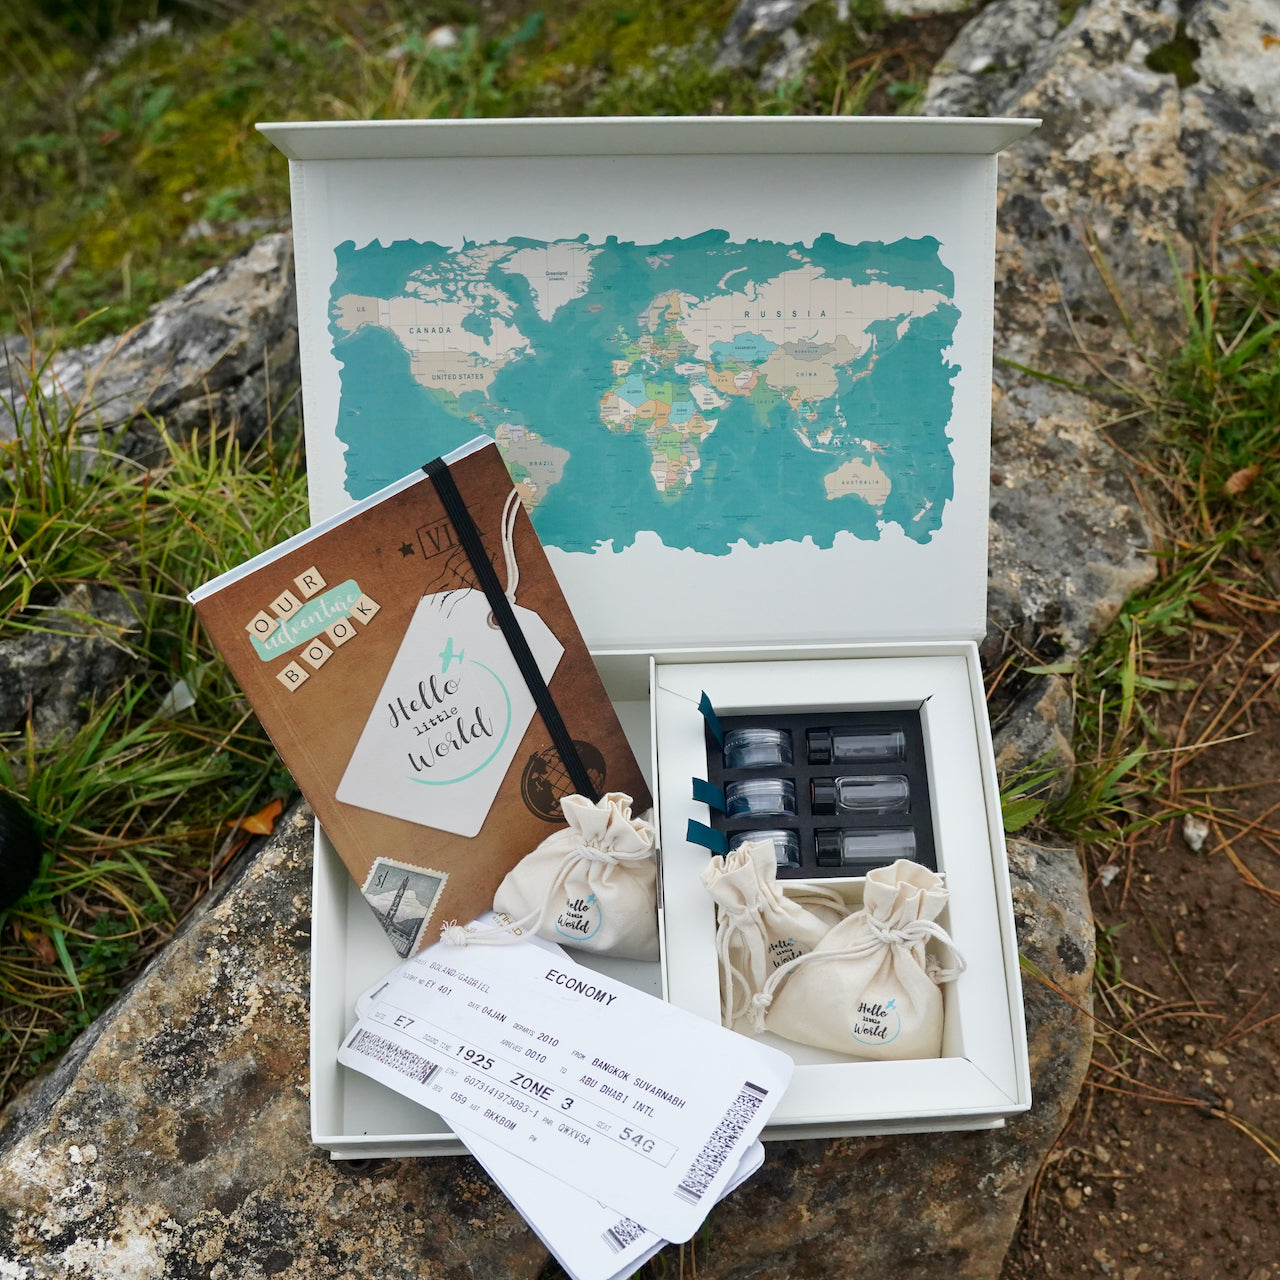 Boite à souvenirs cadeau pour garder les souvenirs de voyages en famille, une memory box